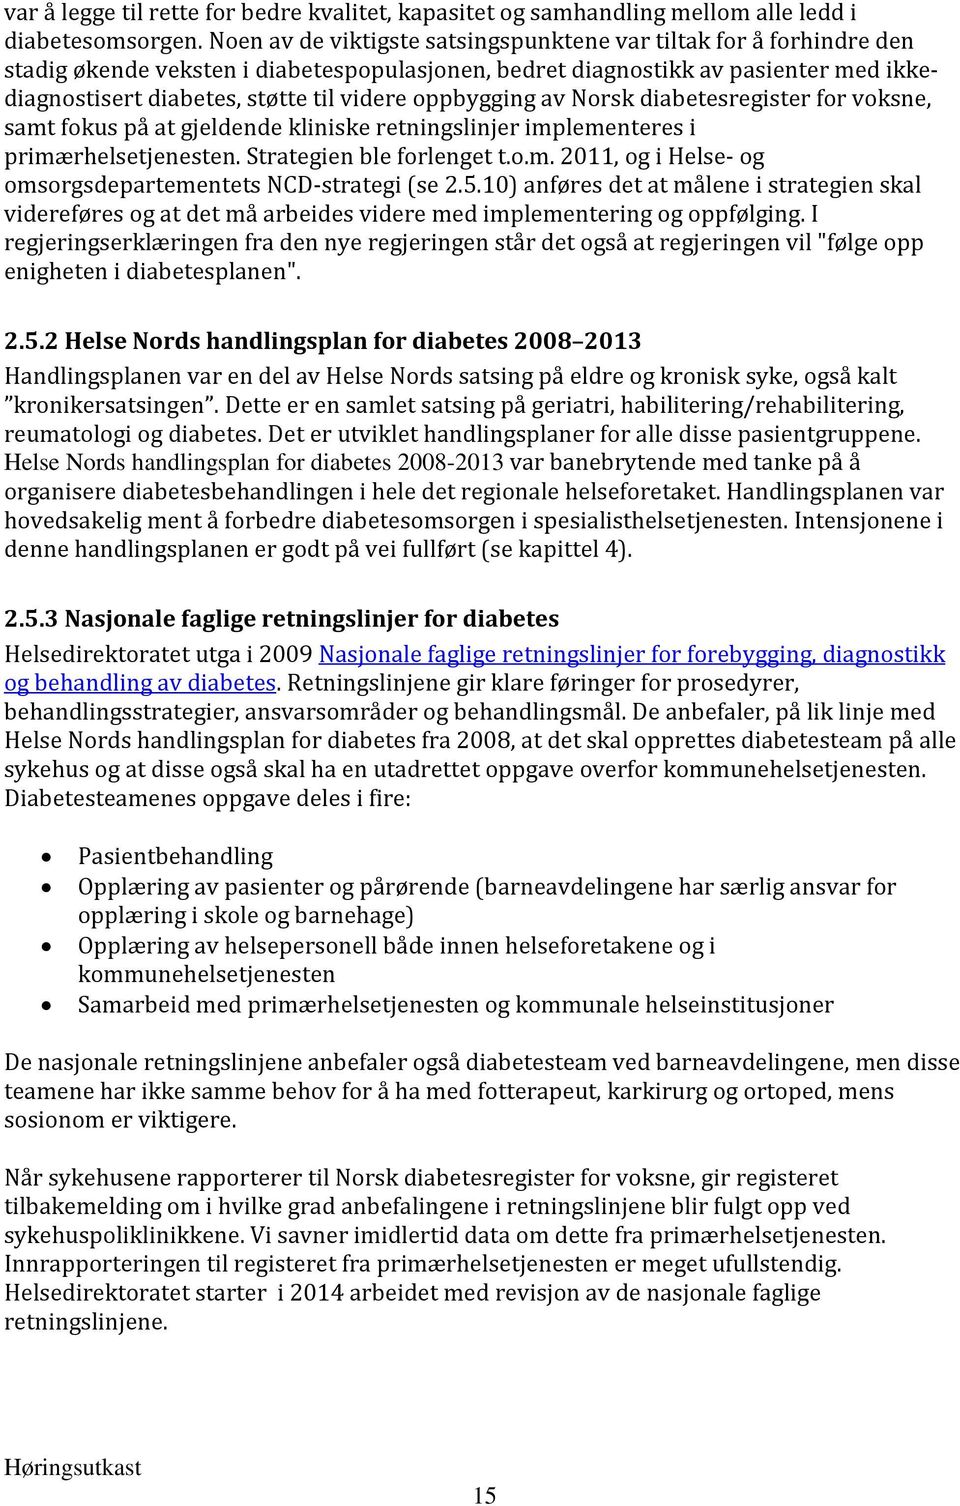 oppbygging av Norsk diabetesregister for voksne, samt fokus på at gjeldende kliniske retningslinjer implementeres i primærhelsetjenesten. Strategien ble forlenget t.o.m. 2011, og i Helse- og omsorgsdepartementets NCD-strategi (se 2.